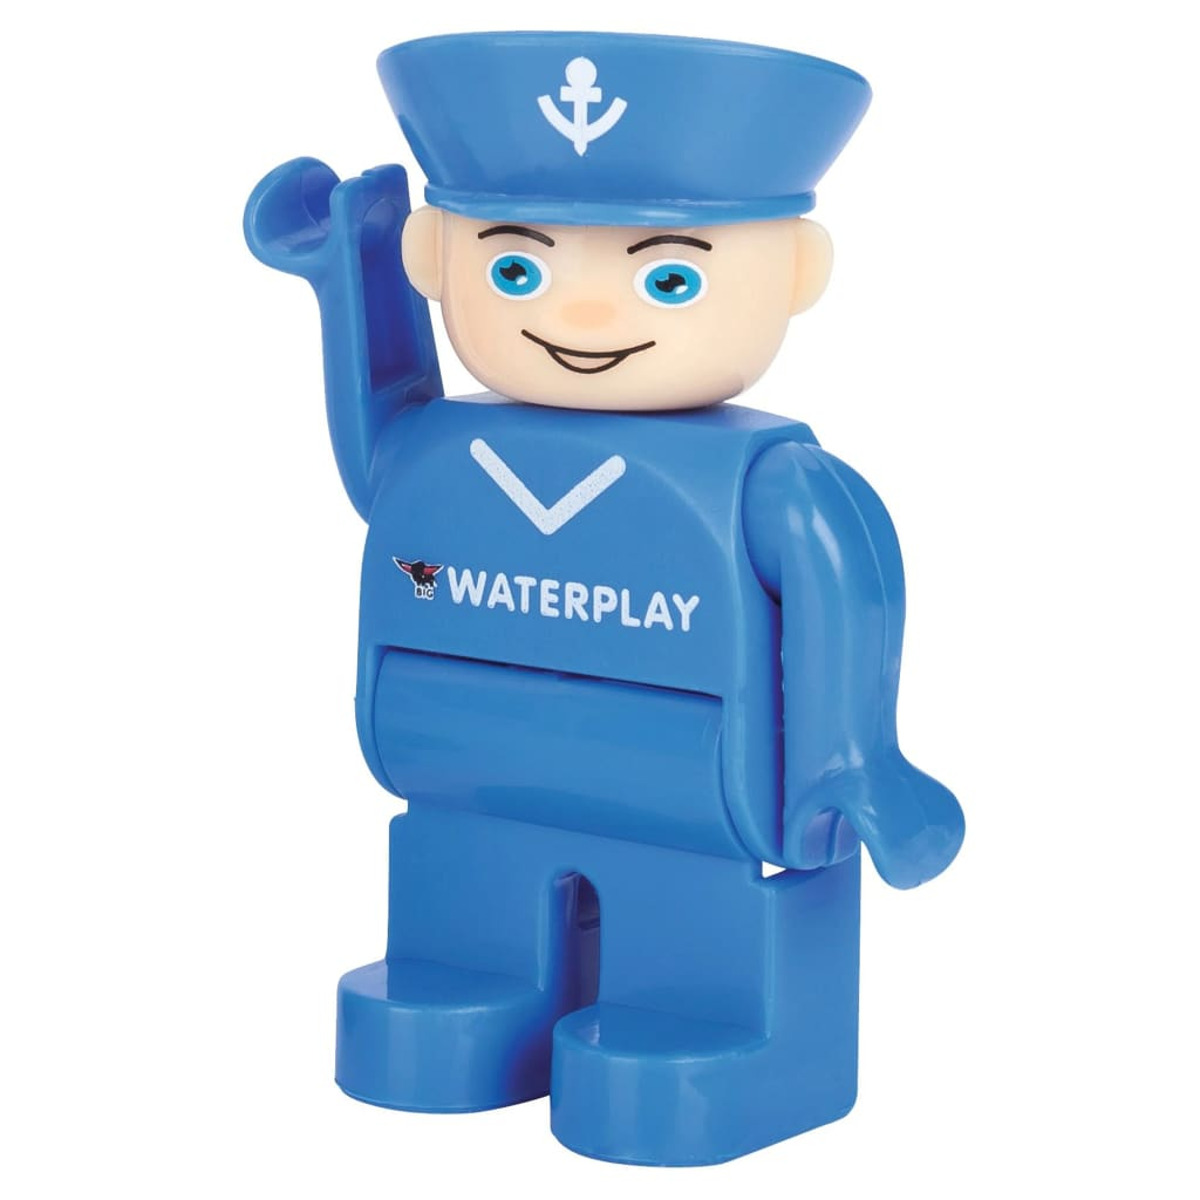 Rotterdam BIG 436528 Waterplay